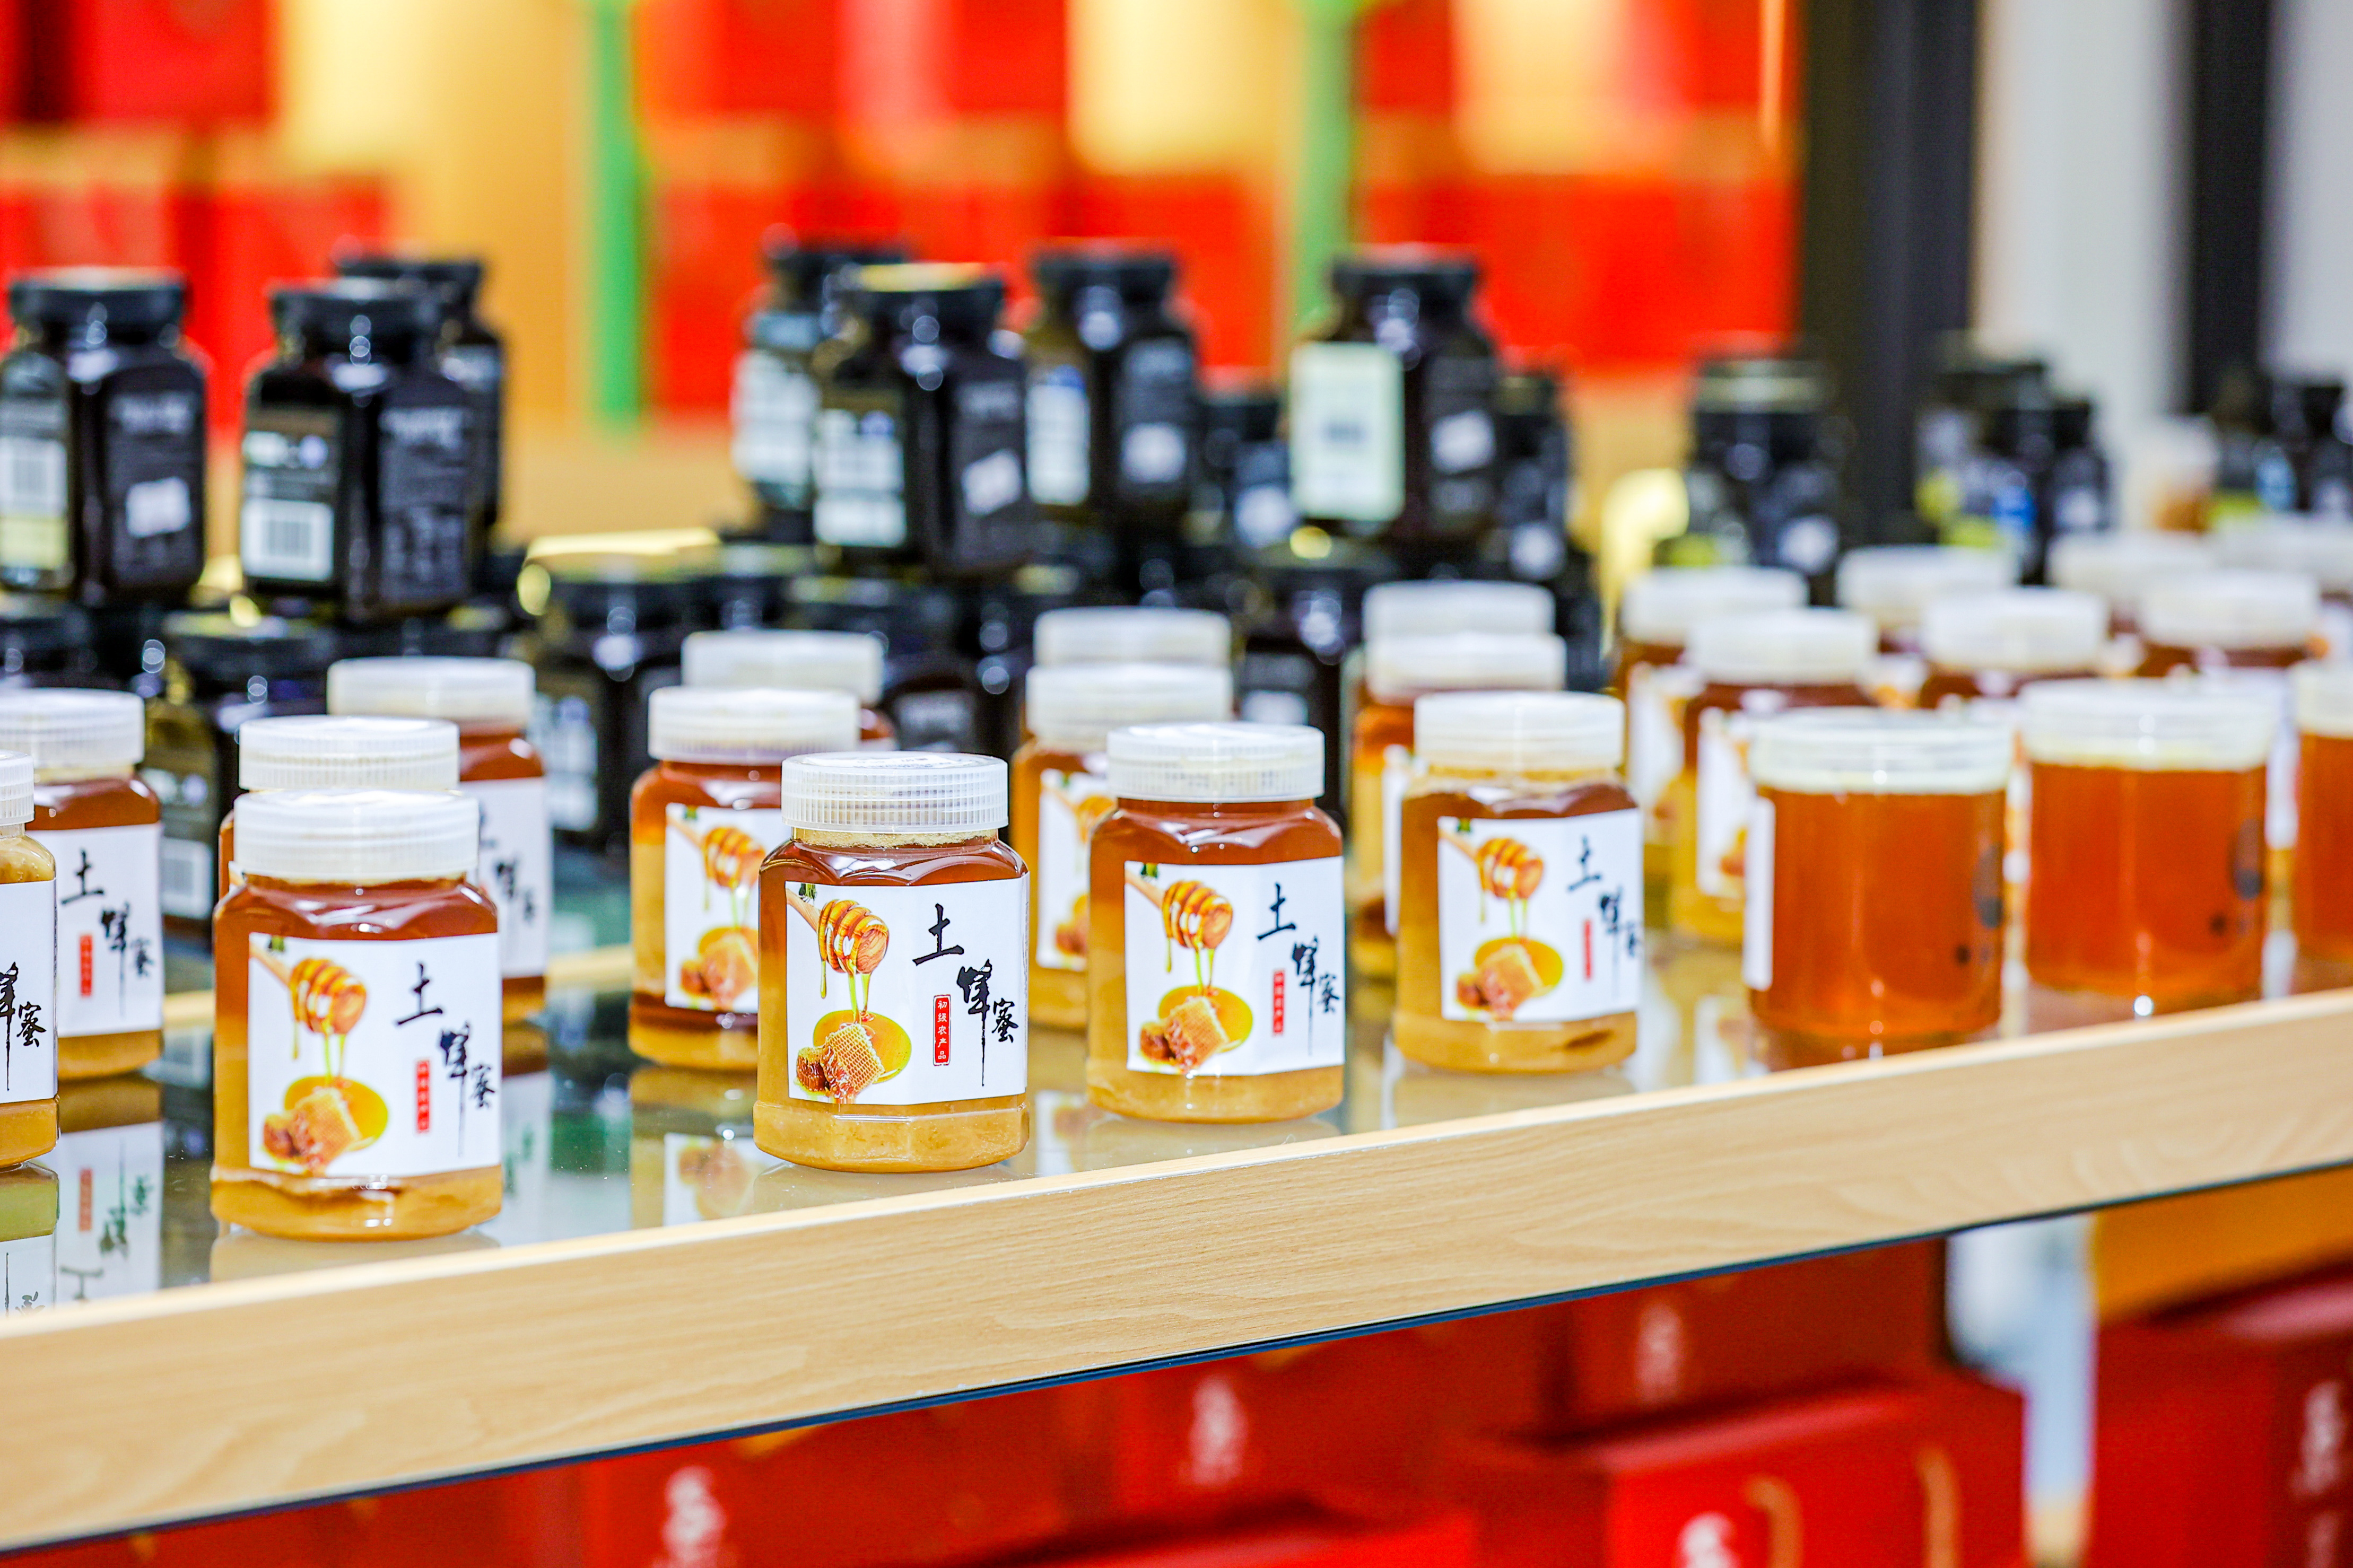 鸭脚木蜜是日馈深汕特别合作区一张独特的农产品名片。